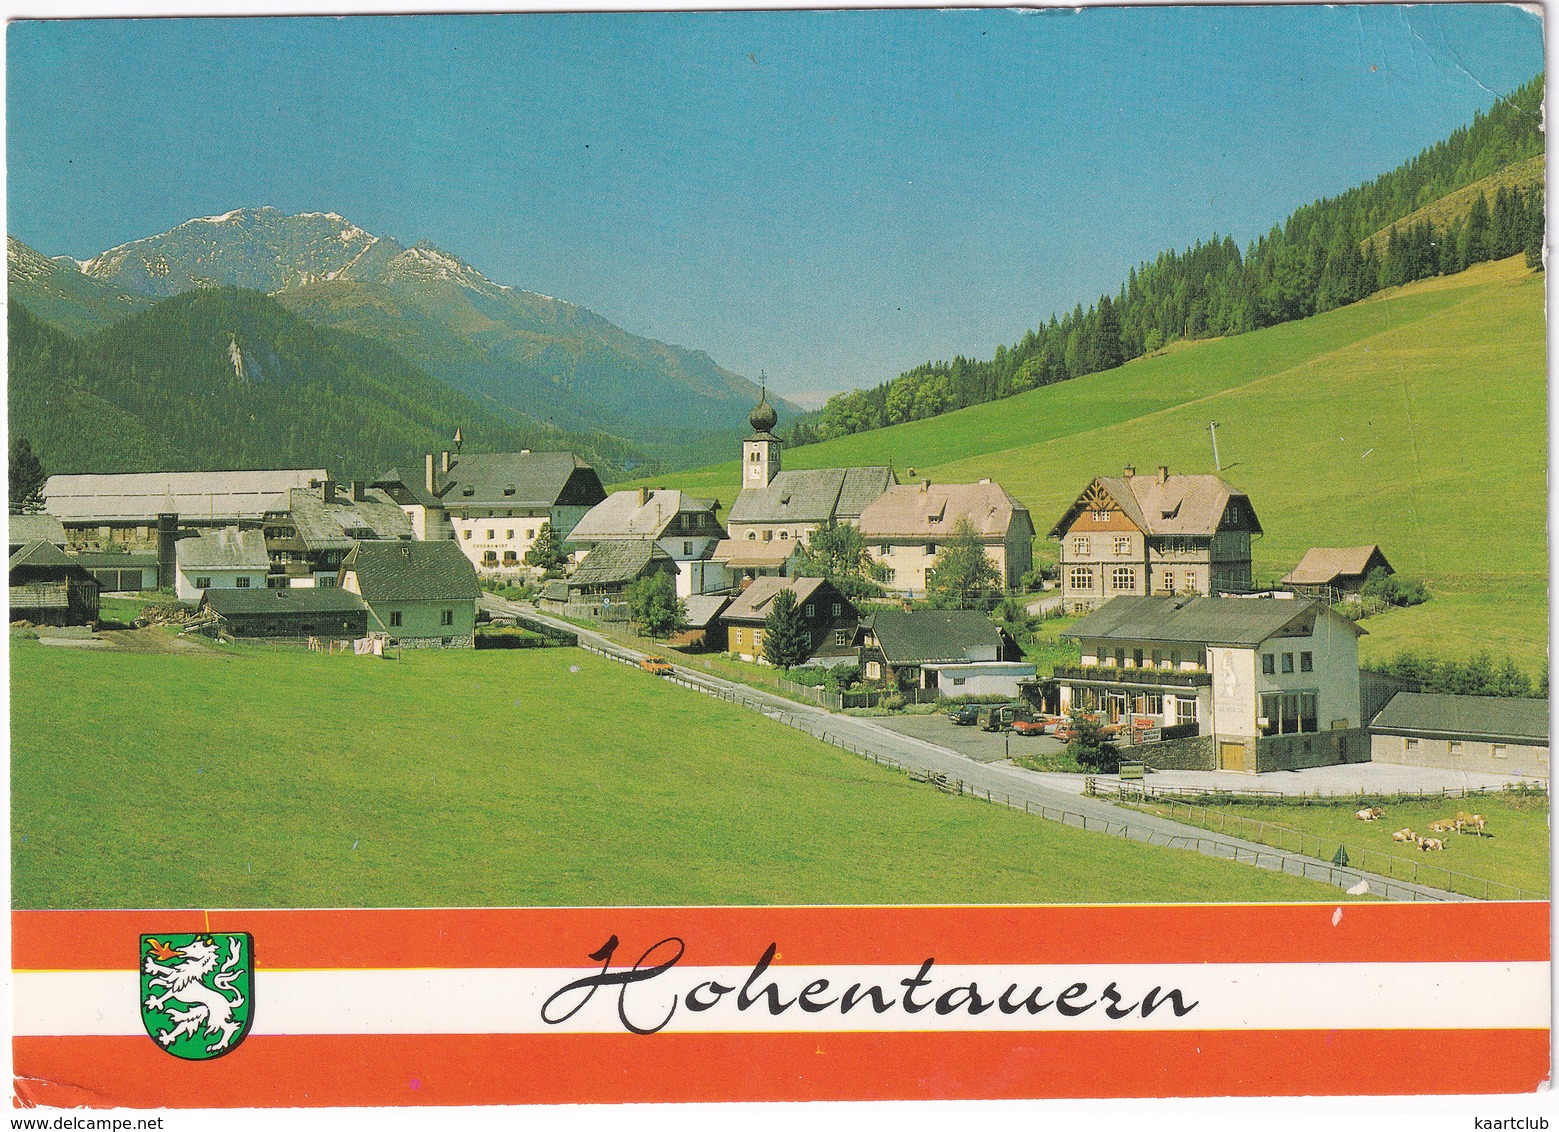 Hohentauern, Steiermark, 1265 M. - Judenburg